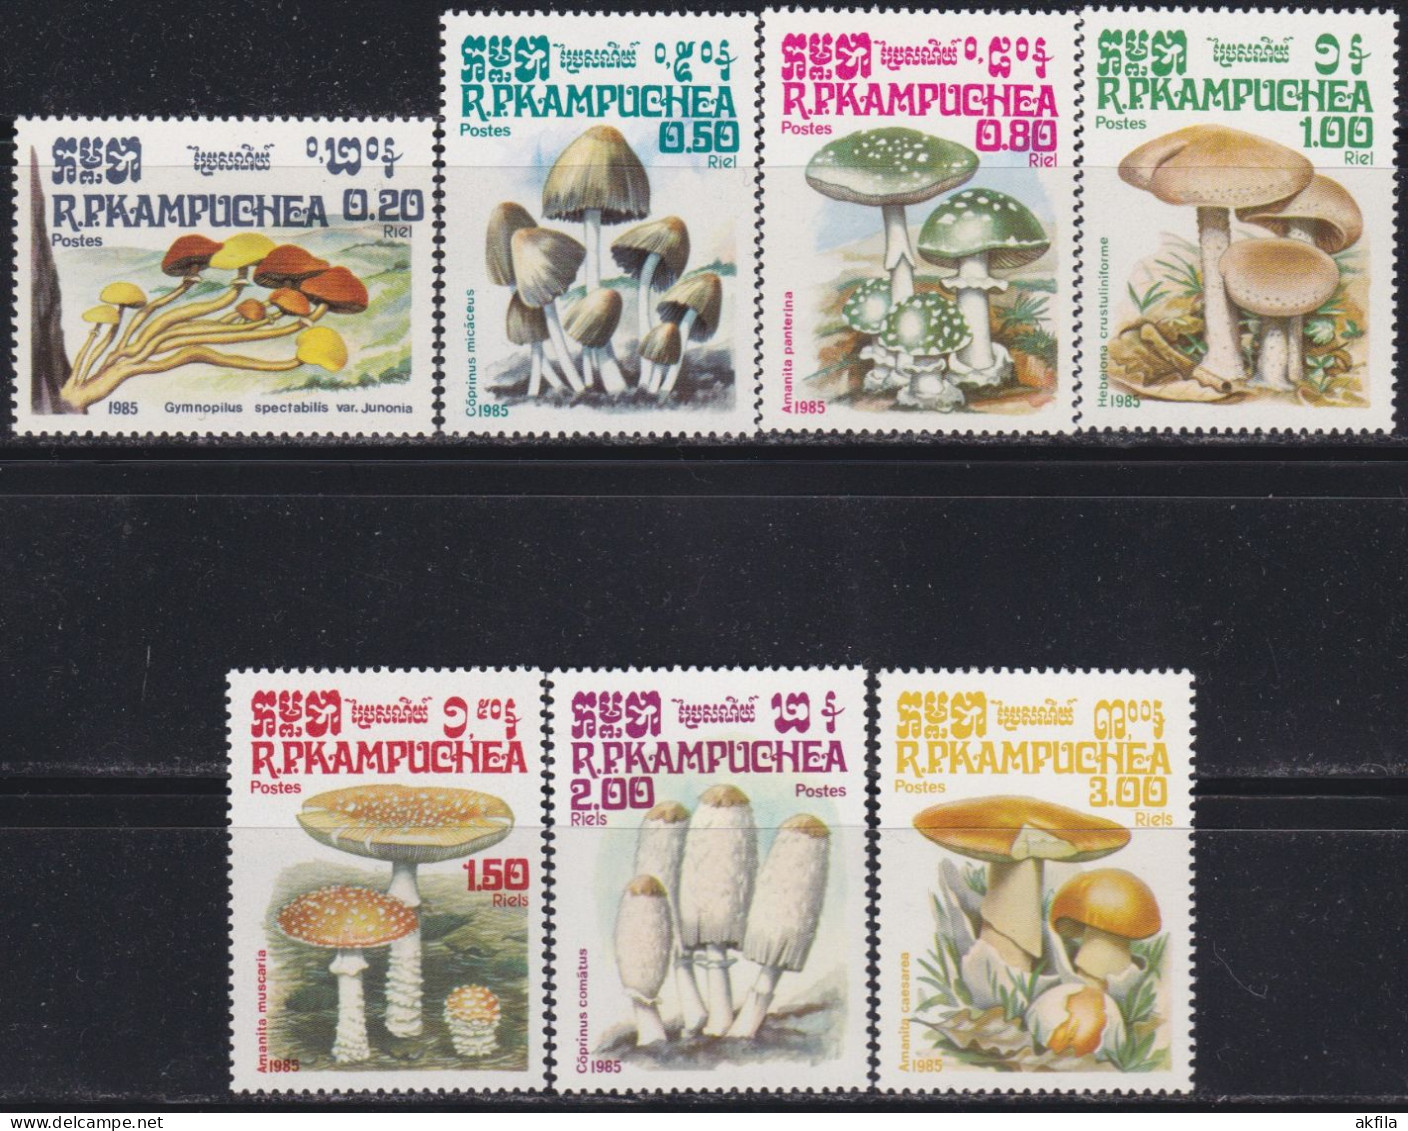 Kampuchea 1985 Mushrooms, Unused, Michel 648/654 - Kampuchea